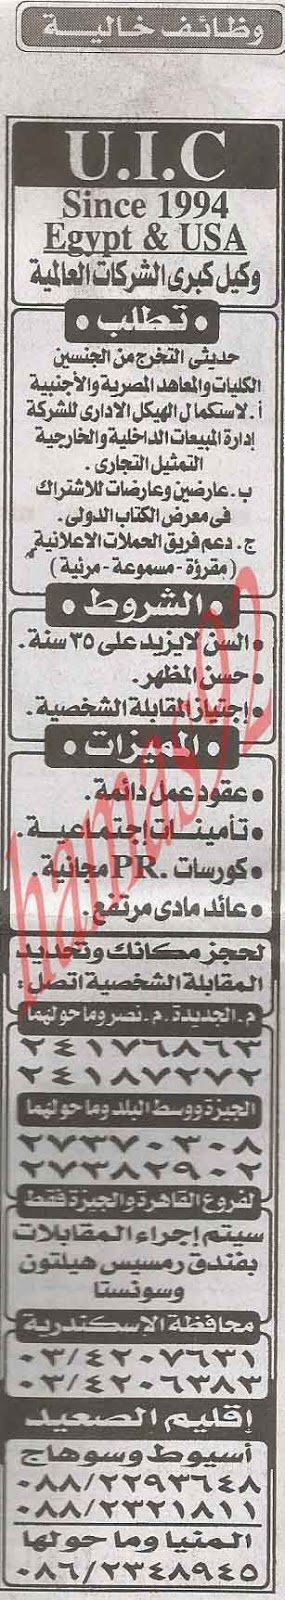 وظائف صحف مصر 7 يناير 2013 %D8%A7%D9%84%D8%A7%D8%AE%D8%A8%D8%A7%D8%B1+2